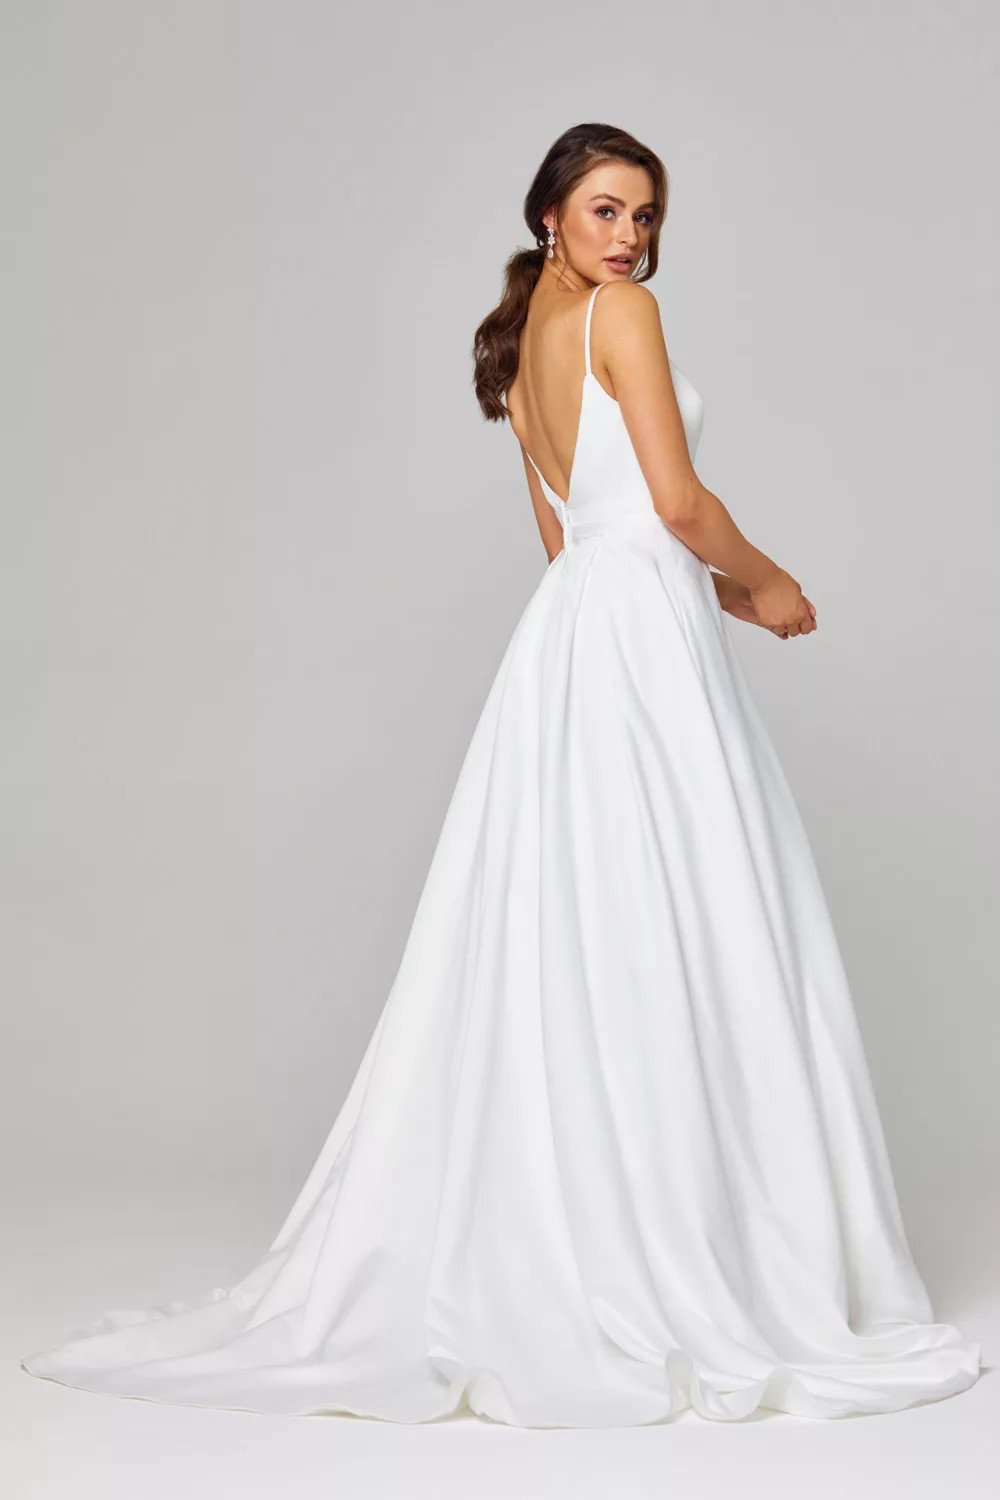 Aurora Wedding Dress by Tania Olsen - Vintage White - Brides Only